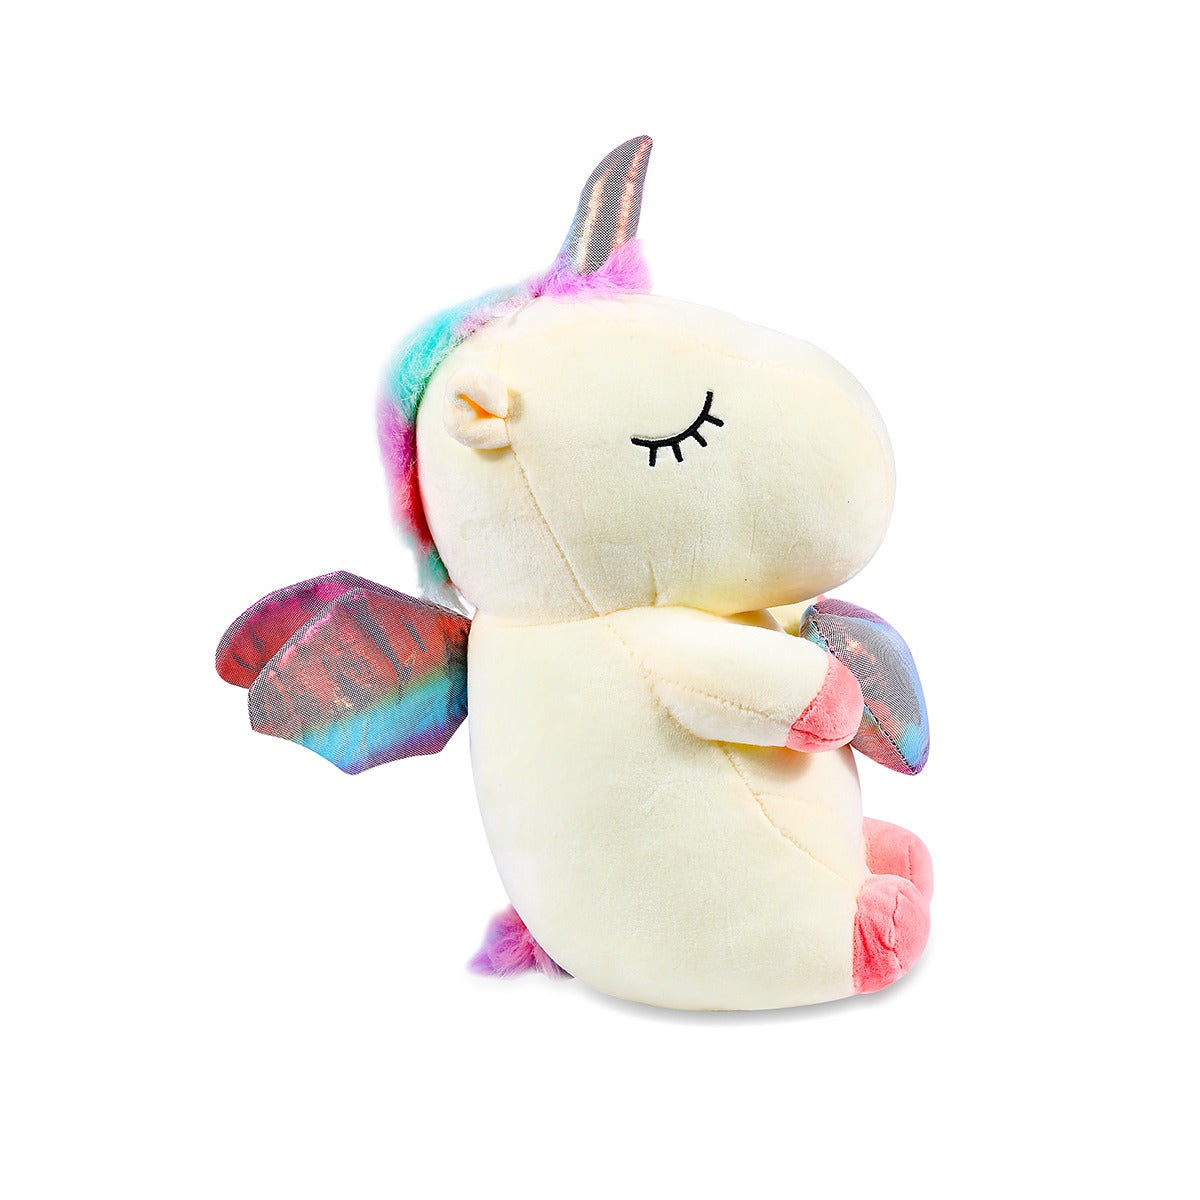 Winged Unicorn Heart Plush Toy | 30 CM